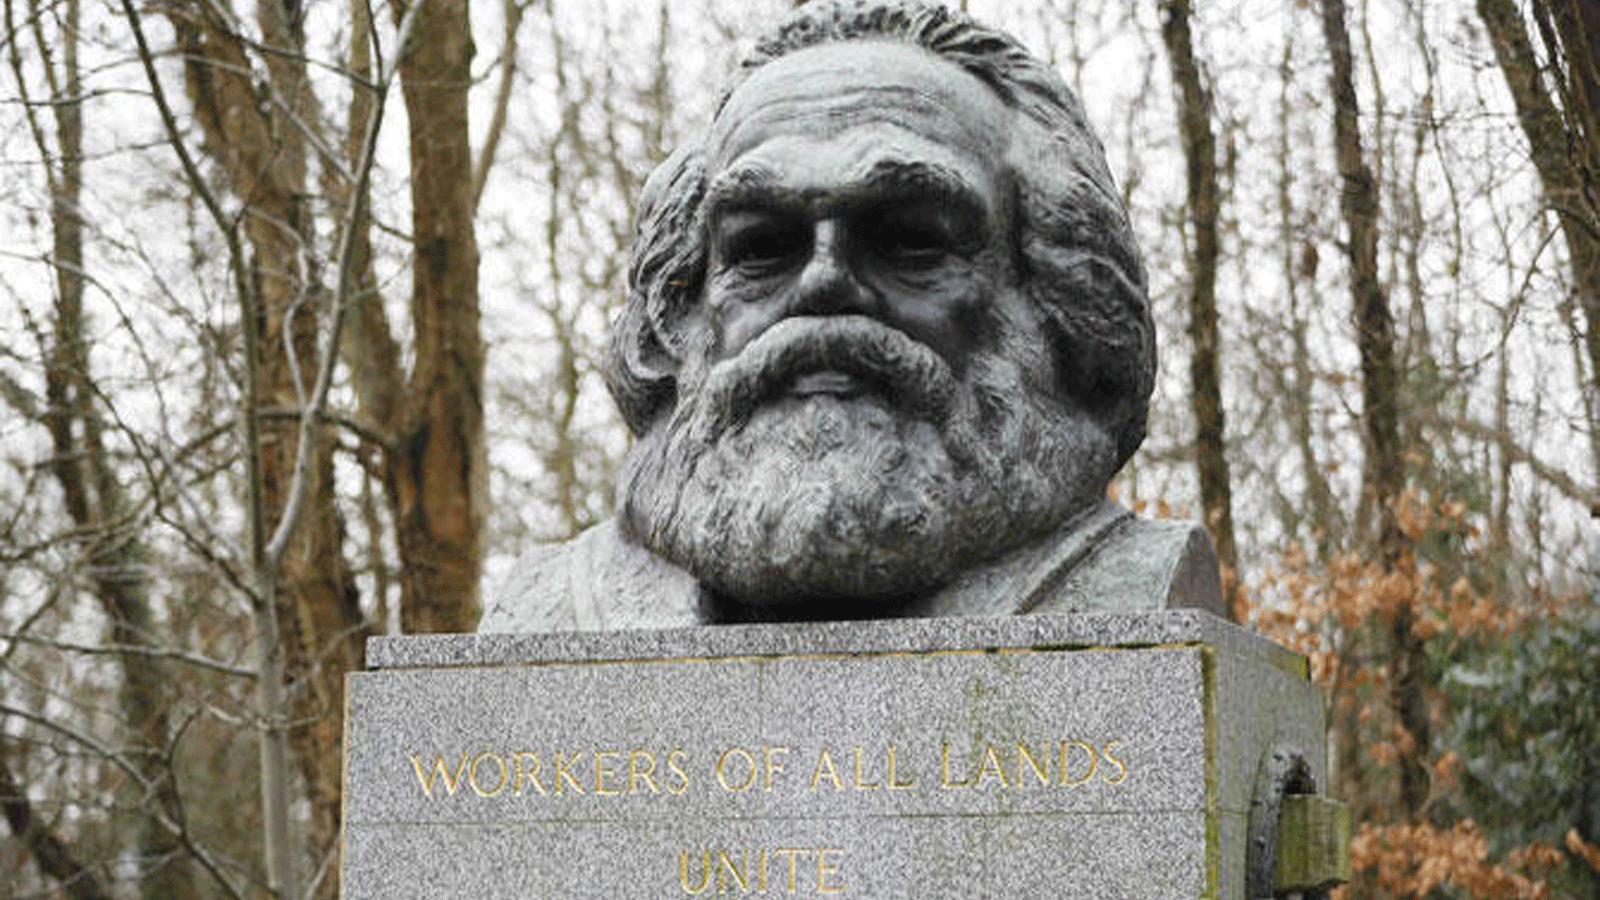 تمثال نصفي من البرونز على قمة النصب التذكاري في قبر الفيلسوف الثوري الألماني كارل ماركس. هايغيت في شمال لندن\ 5 فبراير\ شباط 2019